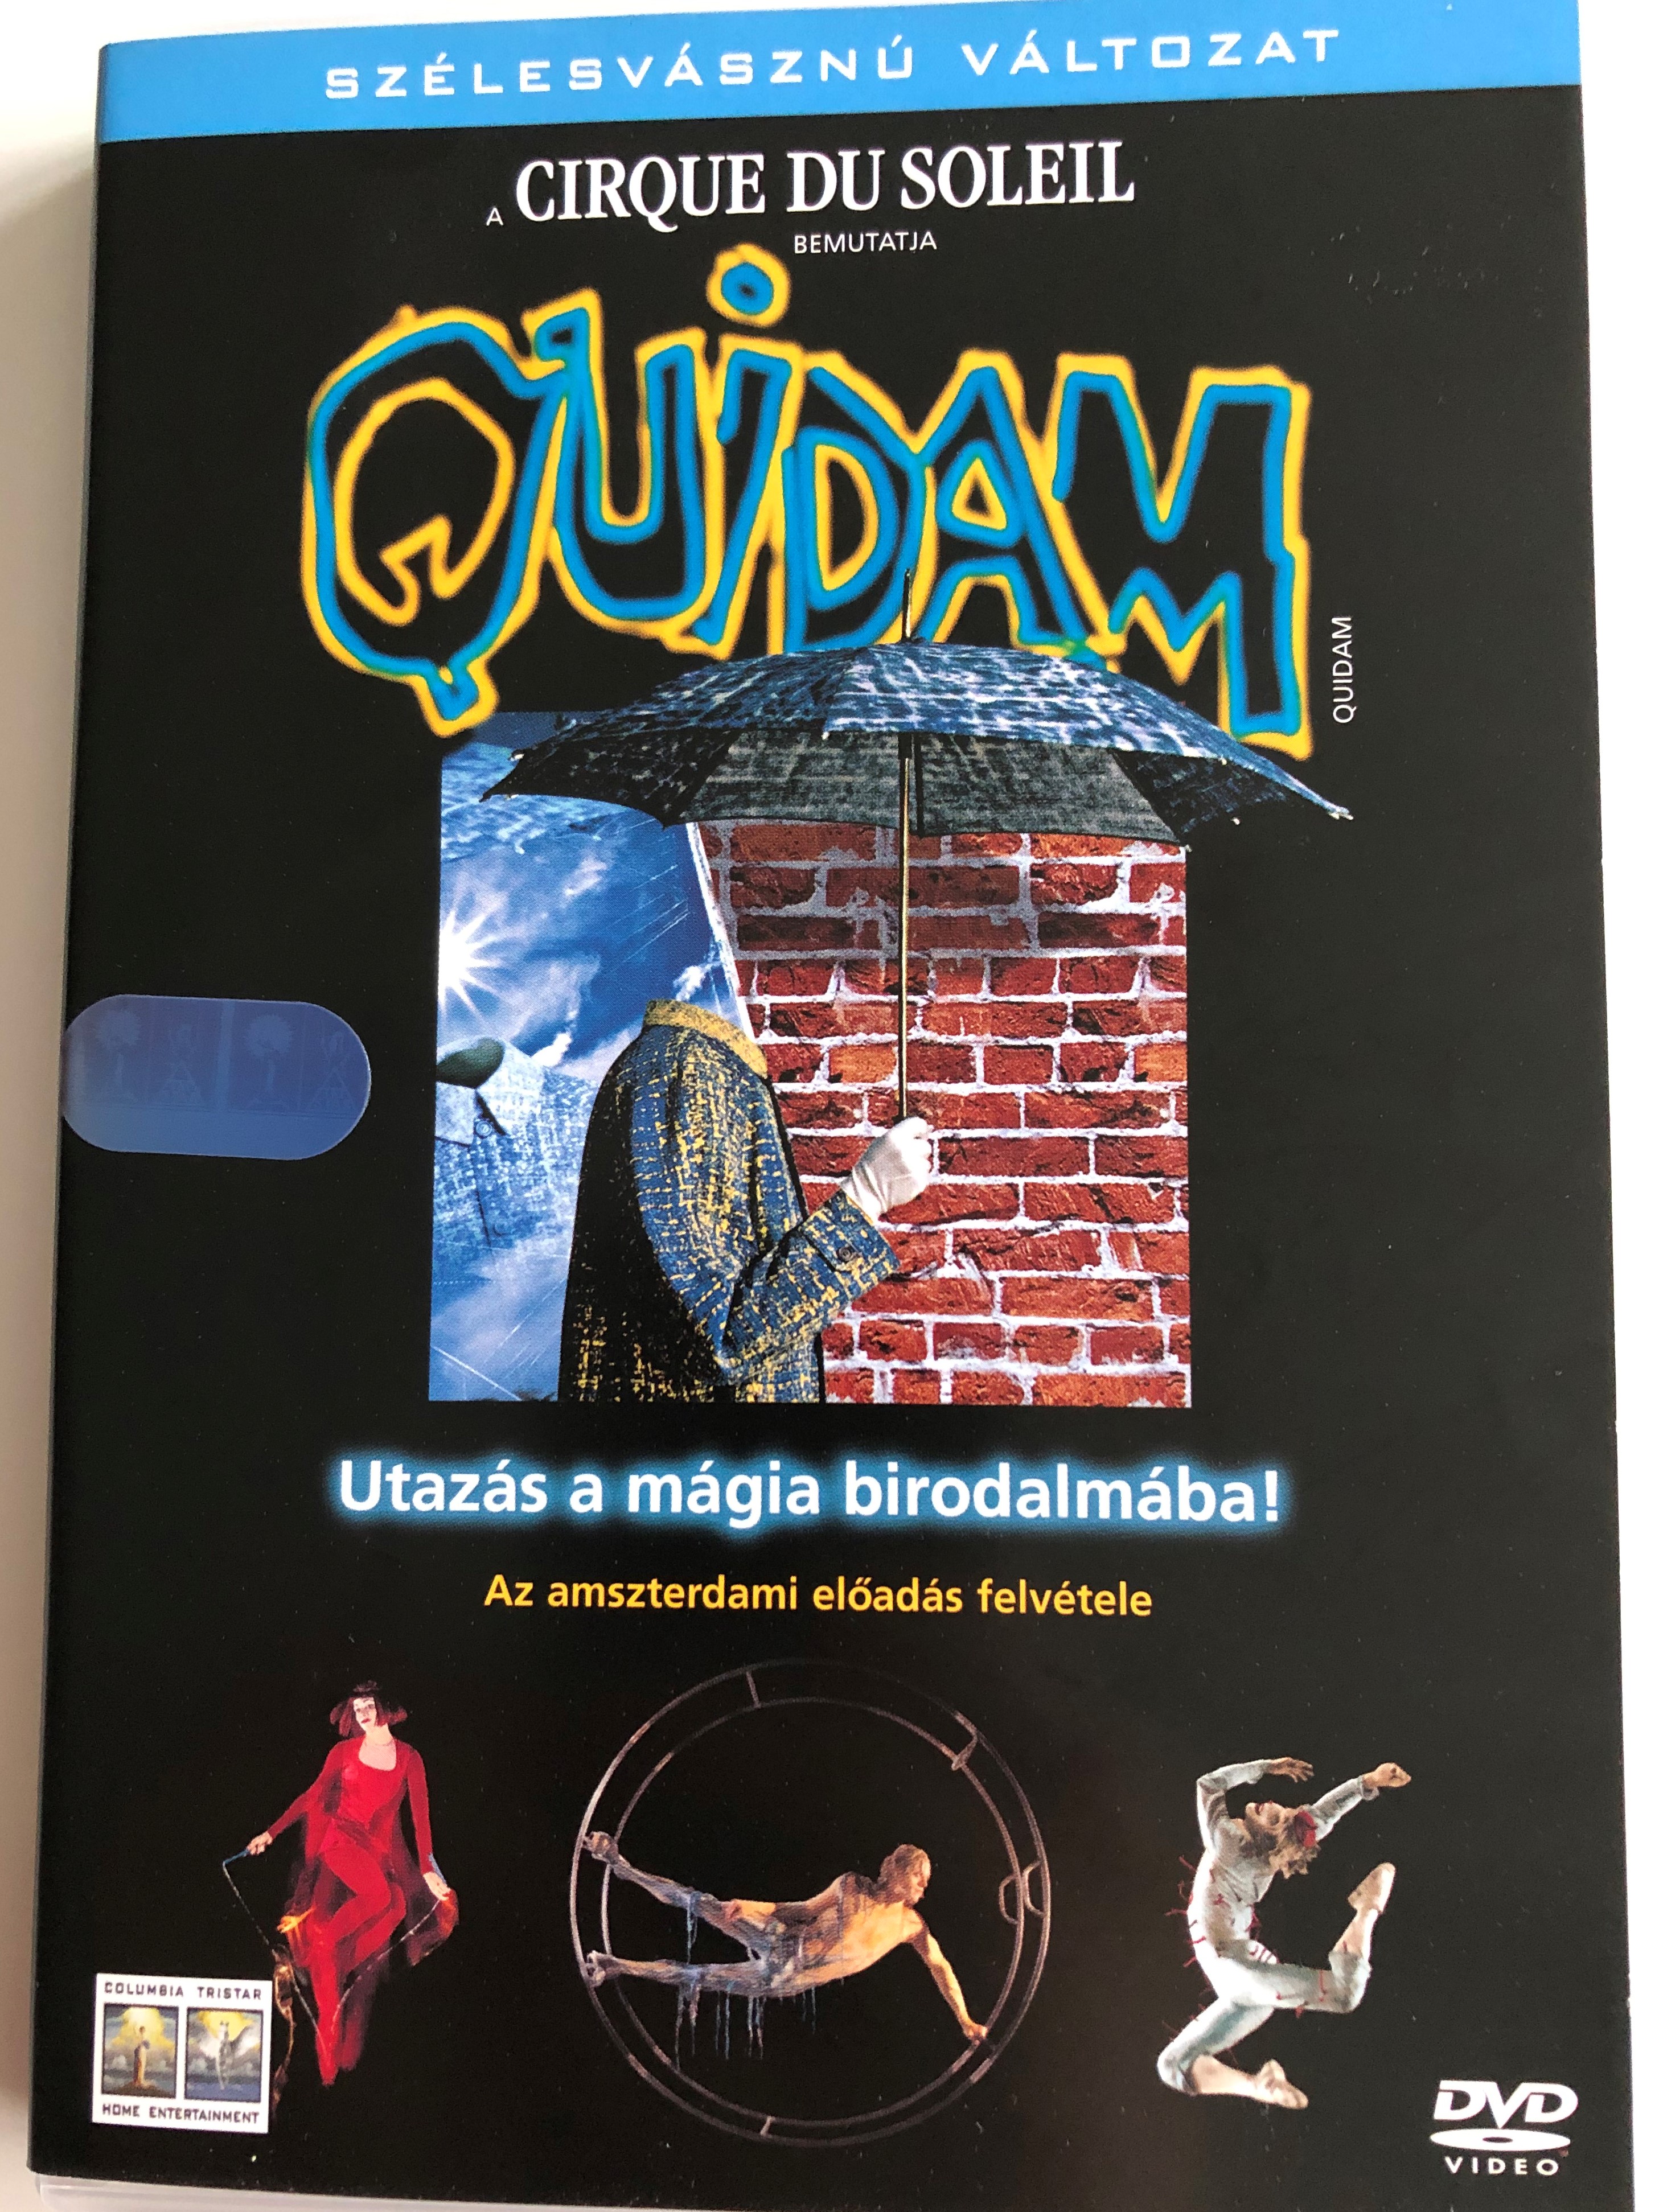 Quidam - Cirque du Soleil DVD / Directed by Benoit Jutras / Utazás a mágia  birodalmába! / Az amszterdami előadás felvétele / Amsterdam recording of  stage show by Cirque du Soleil - bibleinmylanguage